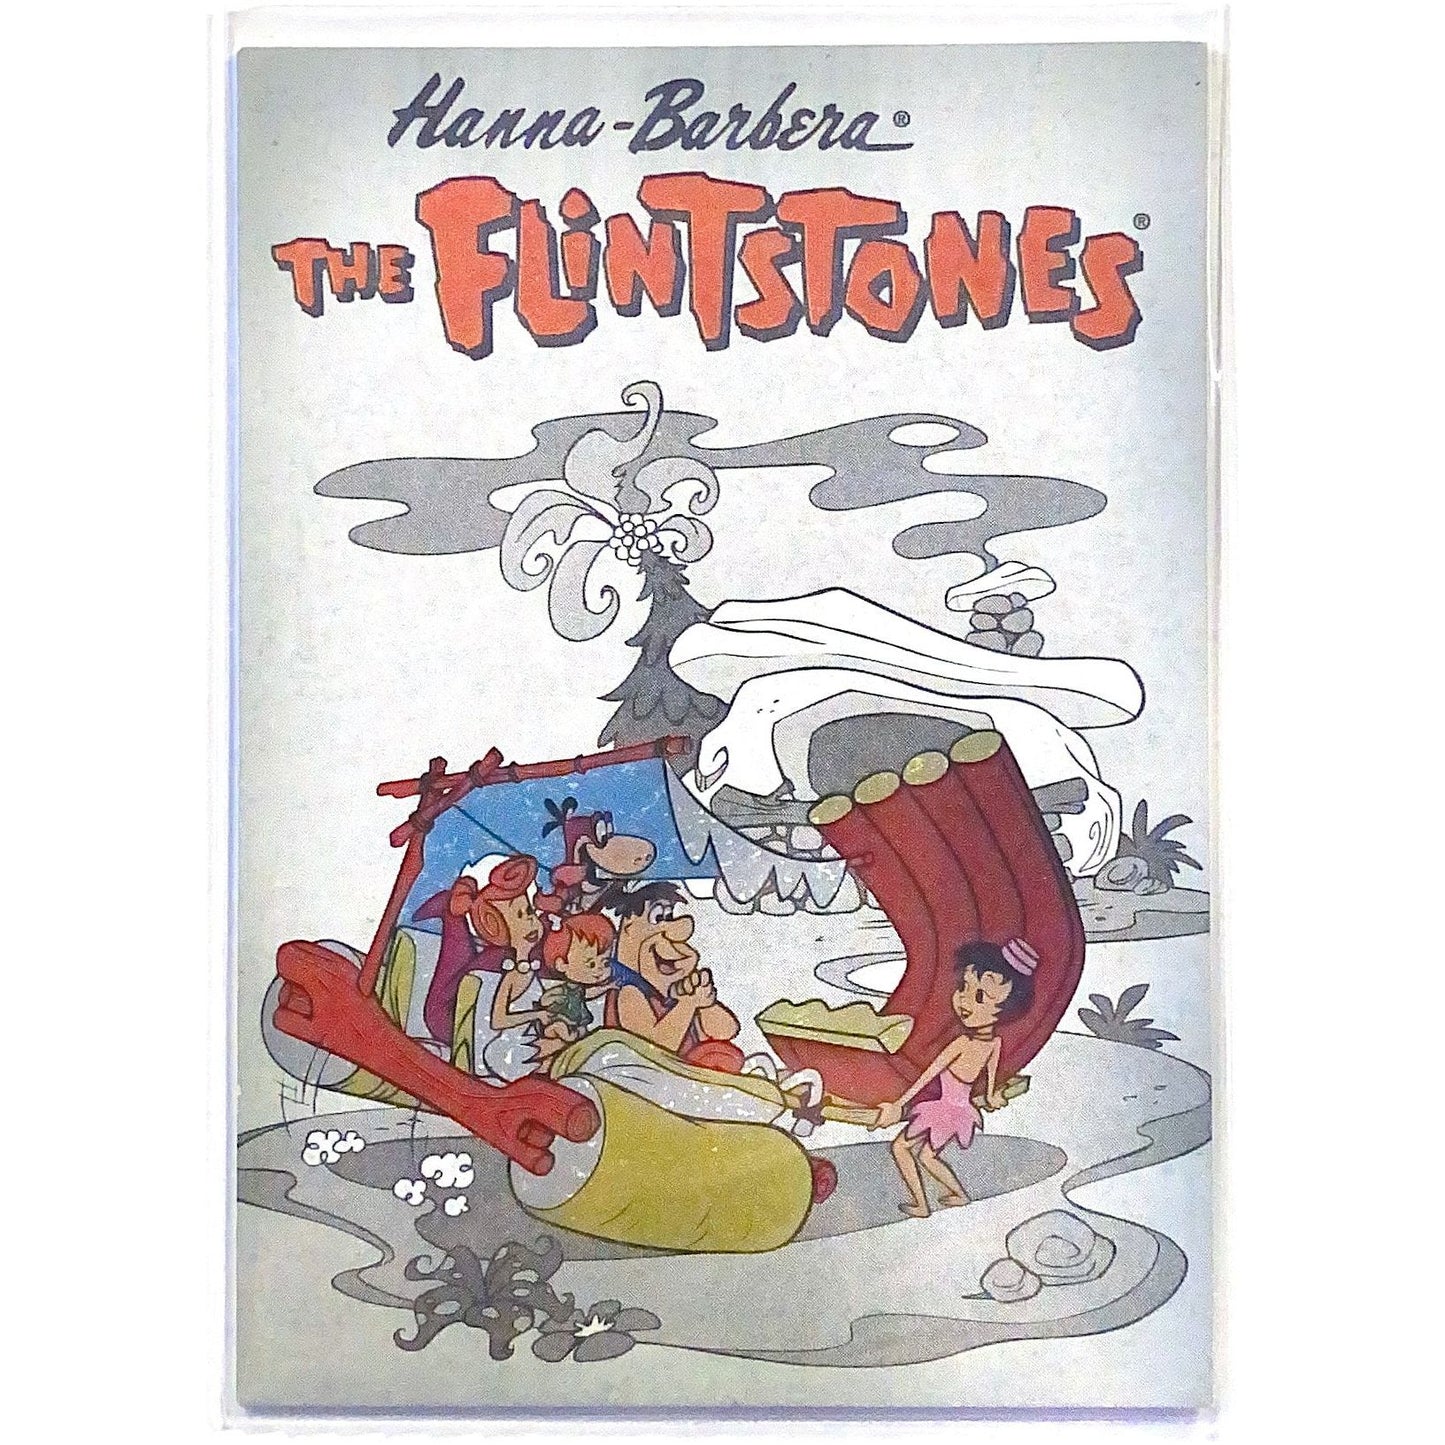  1993 Cardz The Flintstones TekChrome #T1  Local Legends Cards & Collectibles